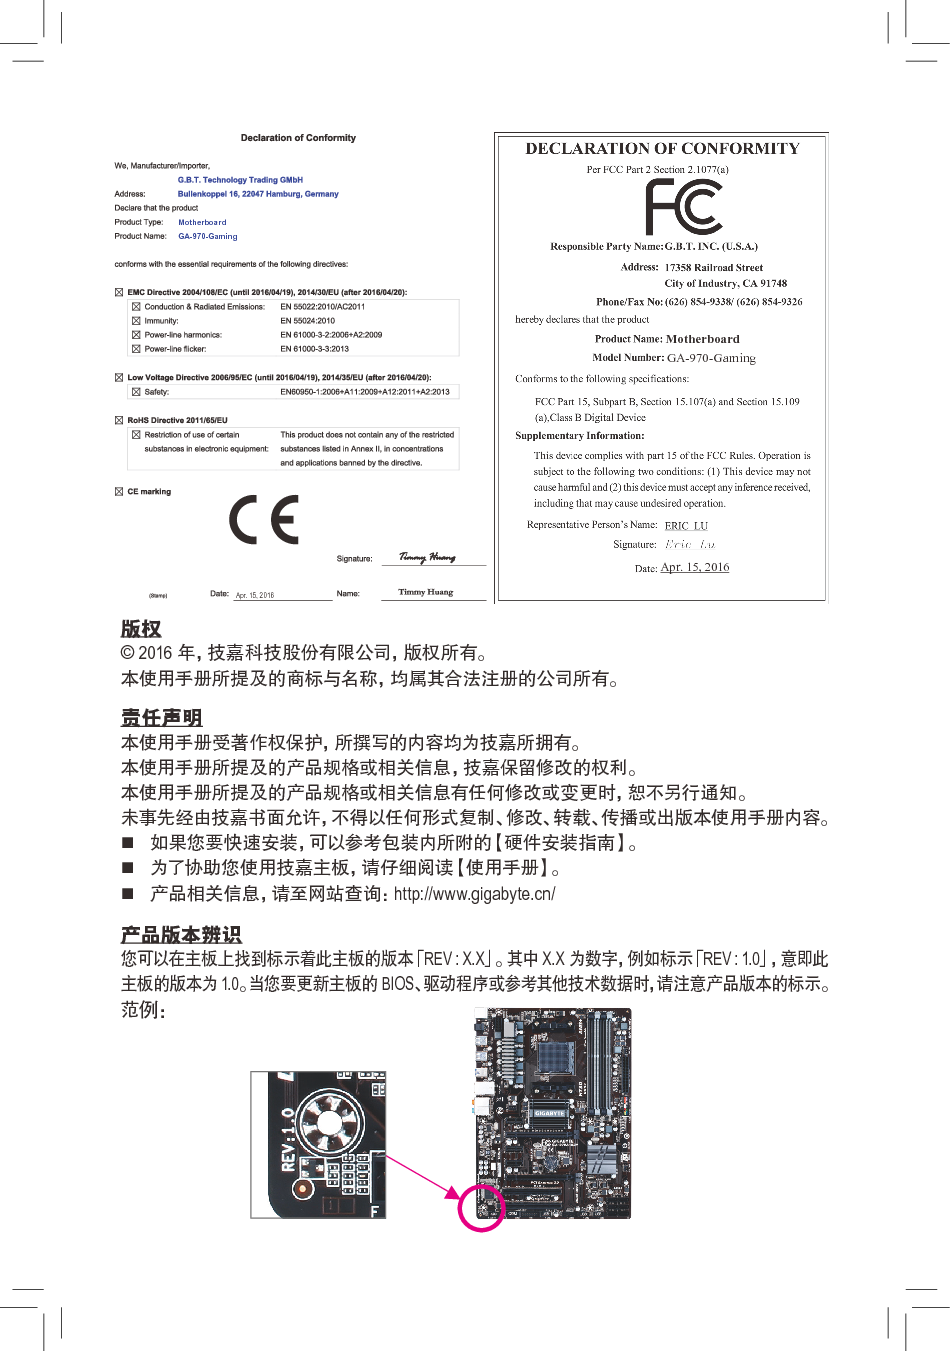 技嘉 Gigabyte GA-970-GAMING 1101版 使用手册 第1页